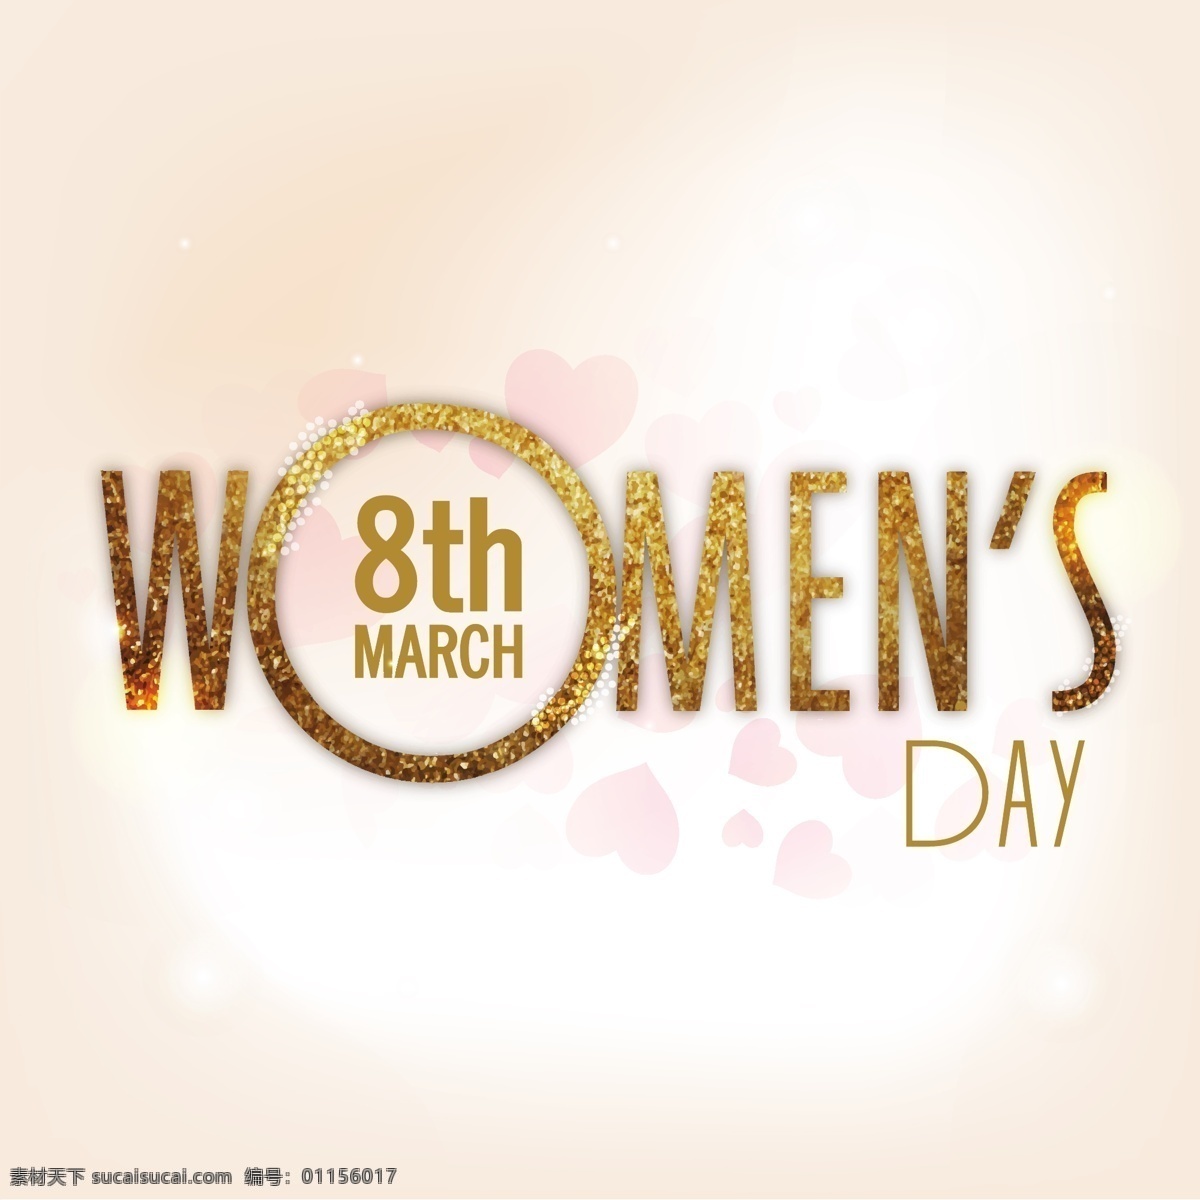 妇女节背景 背景 壁纸 色彩 庆典 假日 丰富多彩 庆祝 女士 女性 自由 国际 日 背景色 三月 彩色 妇女 有色